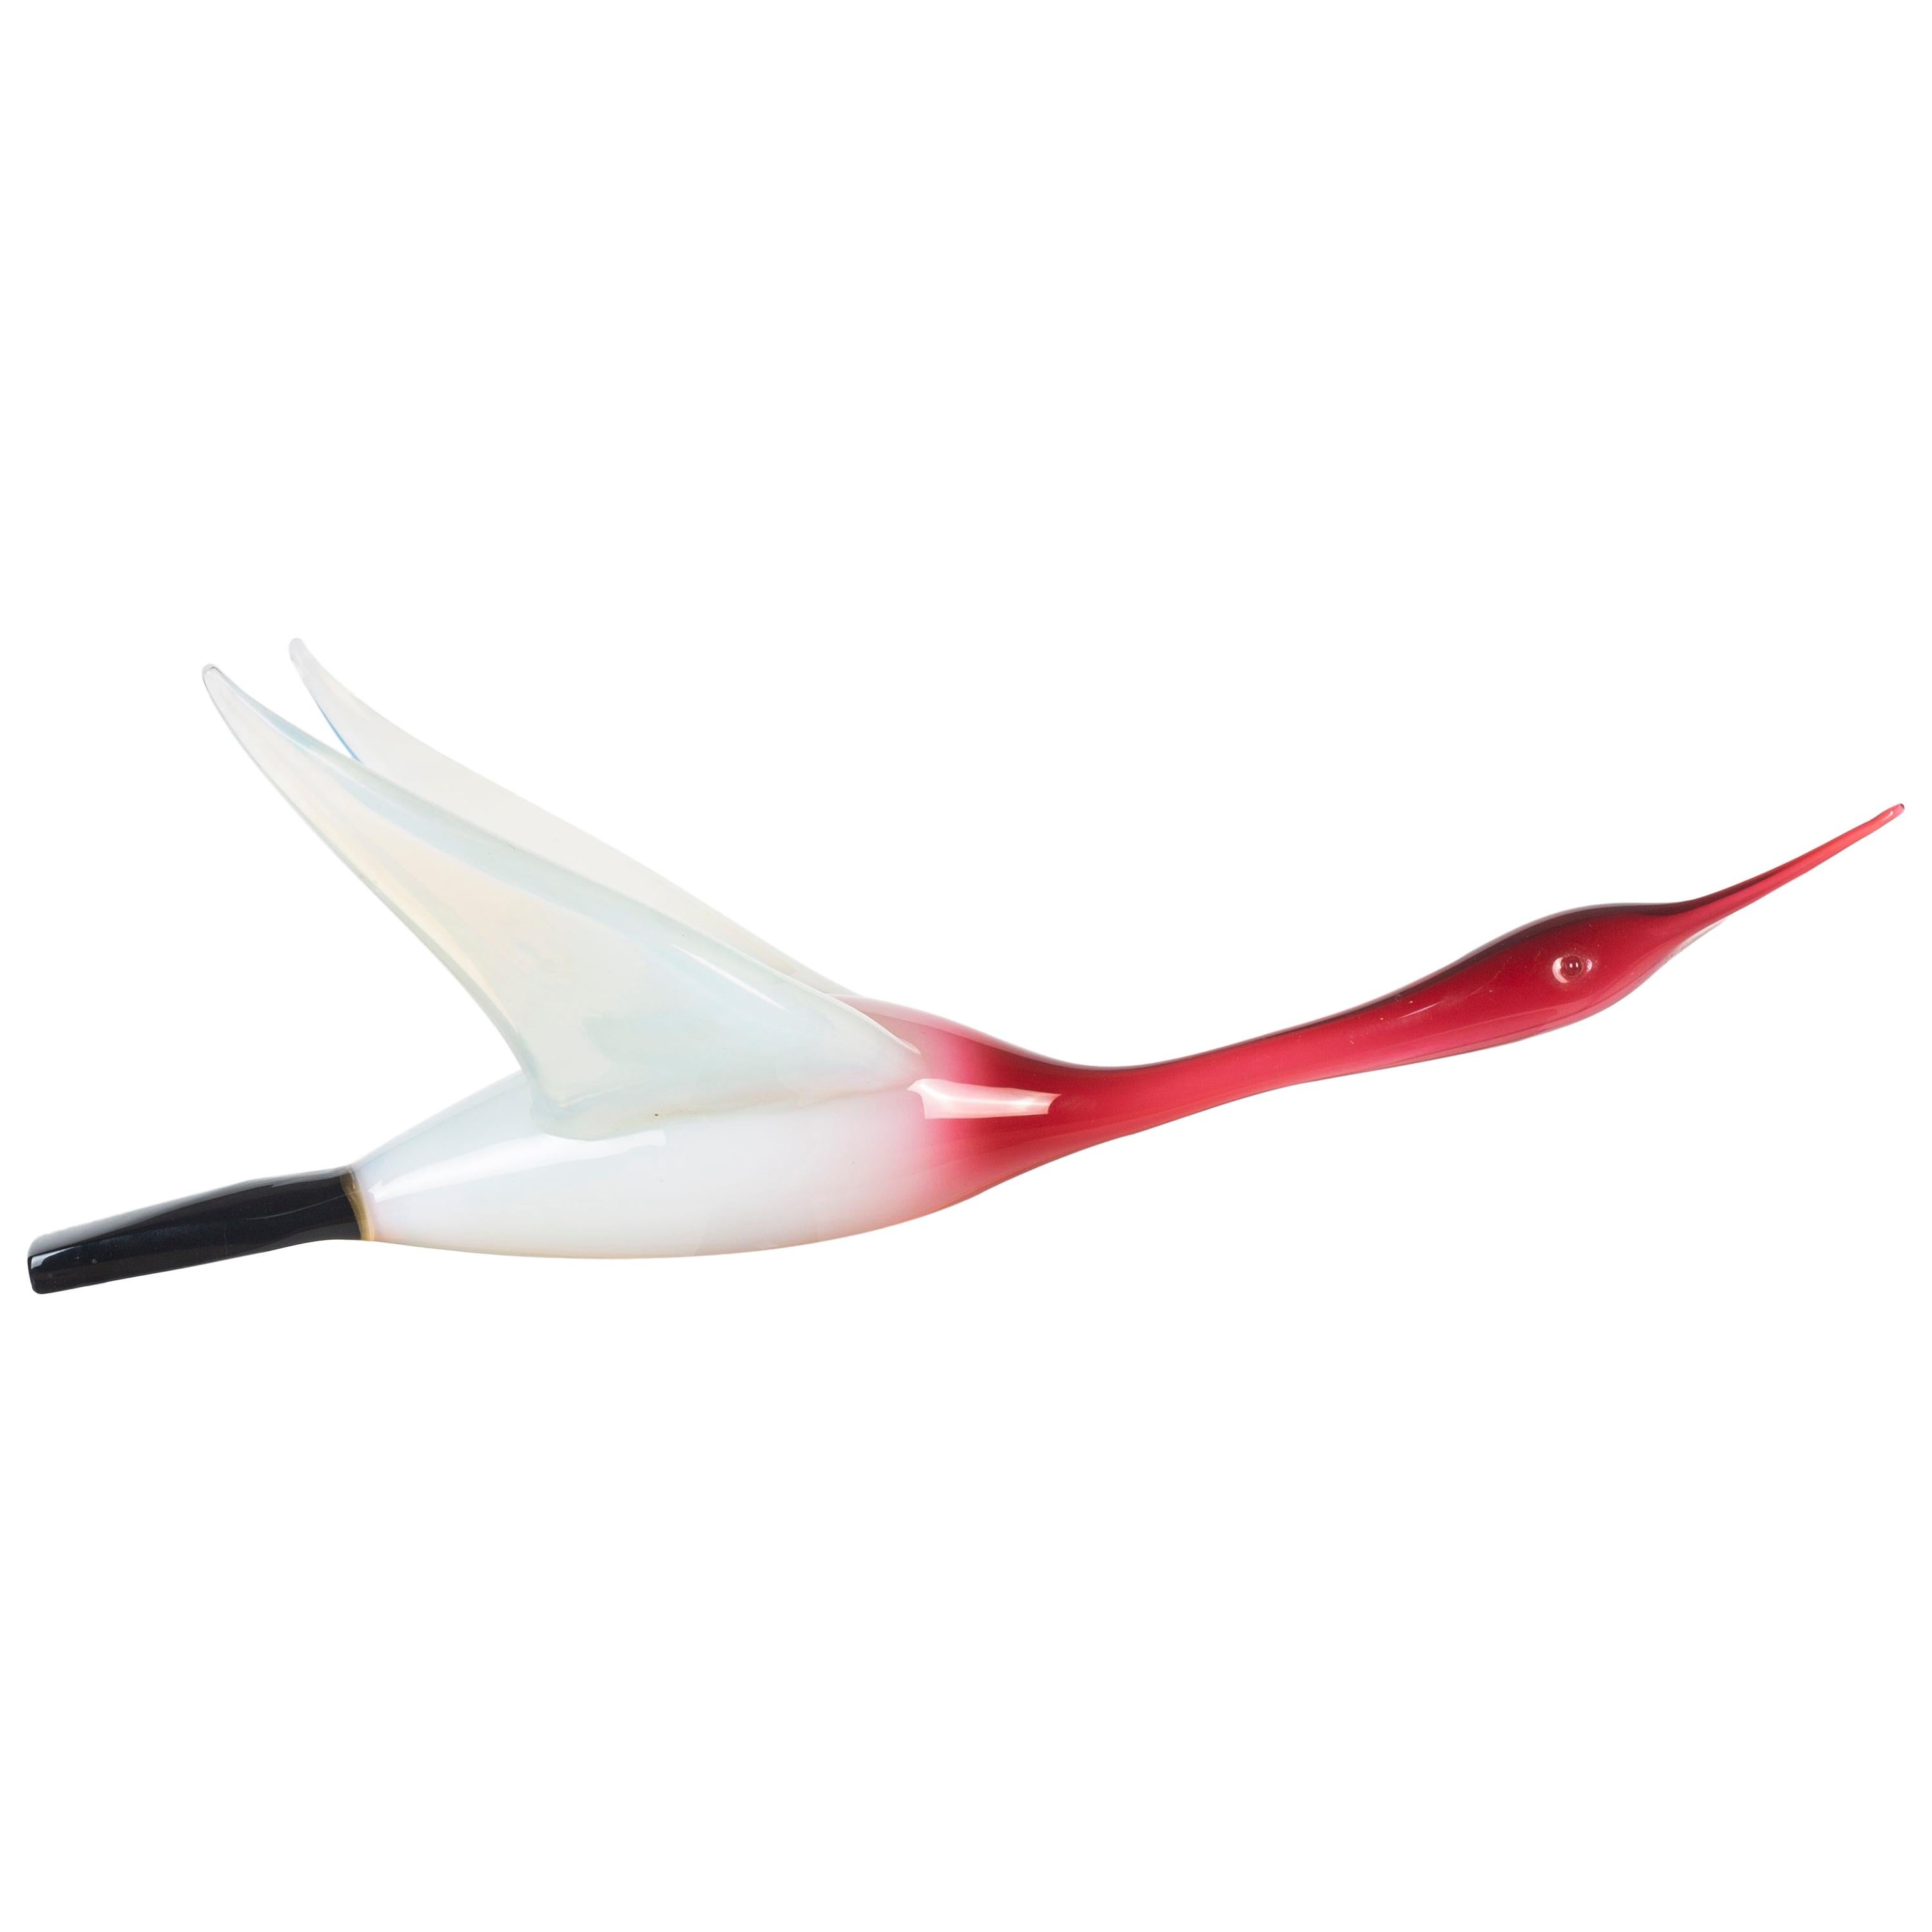 Midcentury Murano Glass Bird